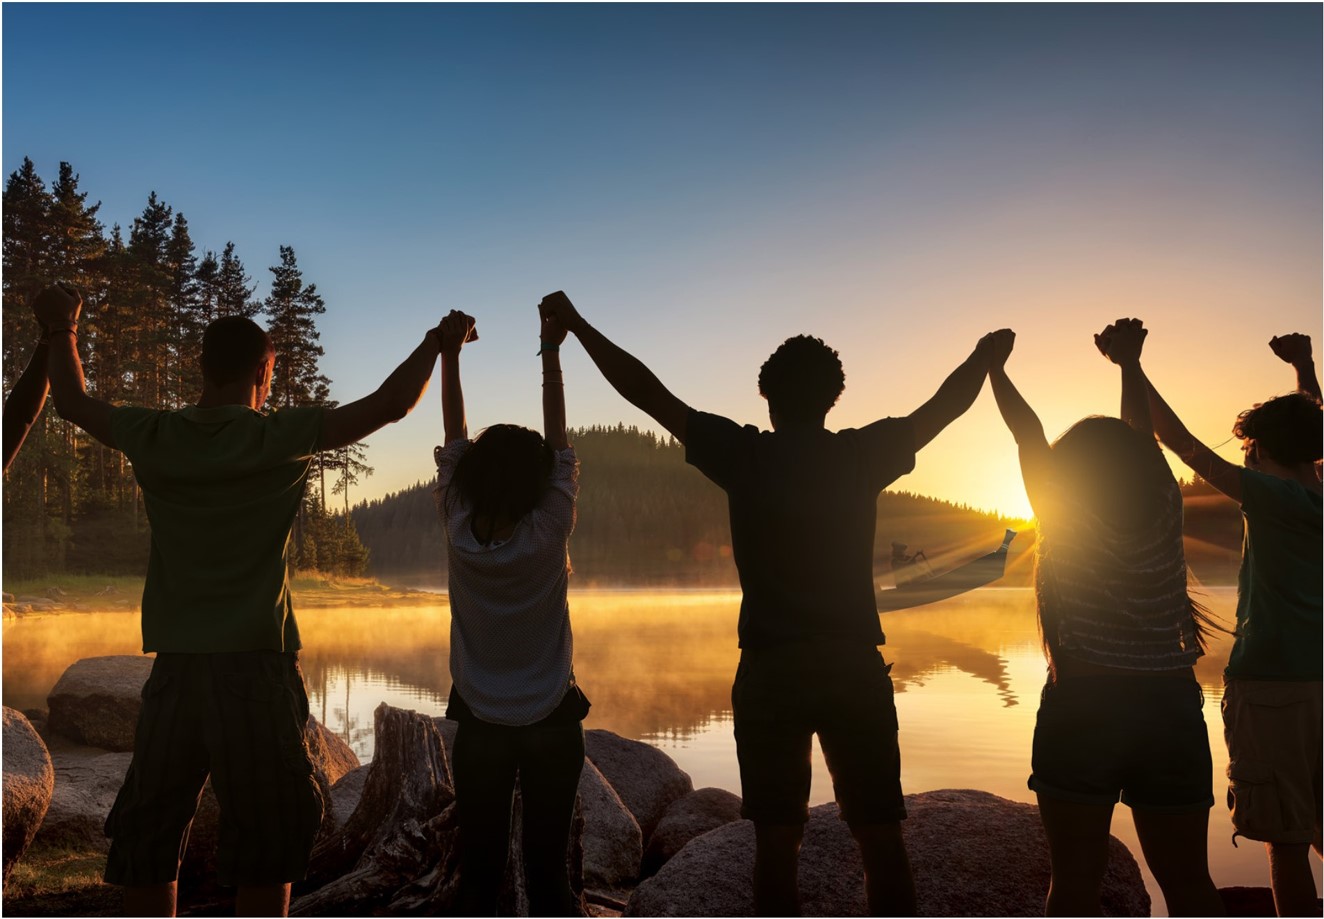 Groupe d’enfants les bras levés, se tenant par les mains et regardant un canot au coucher du soleil.